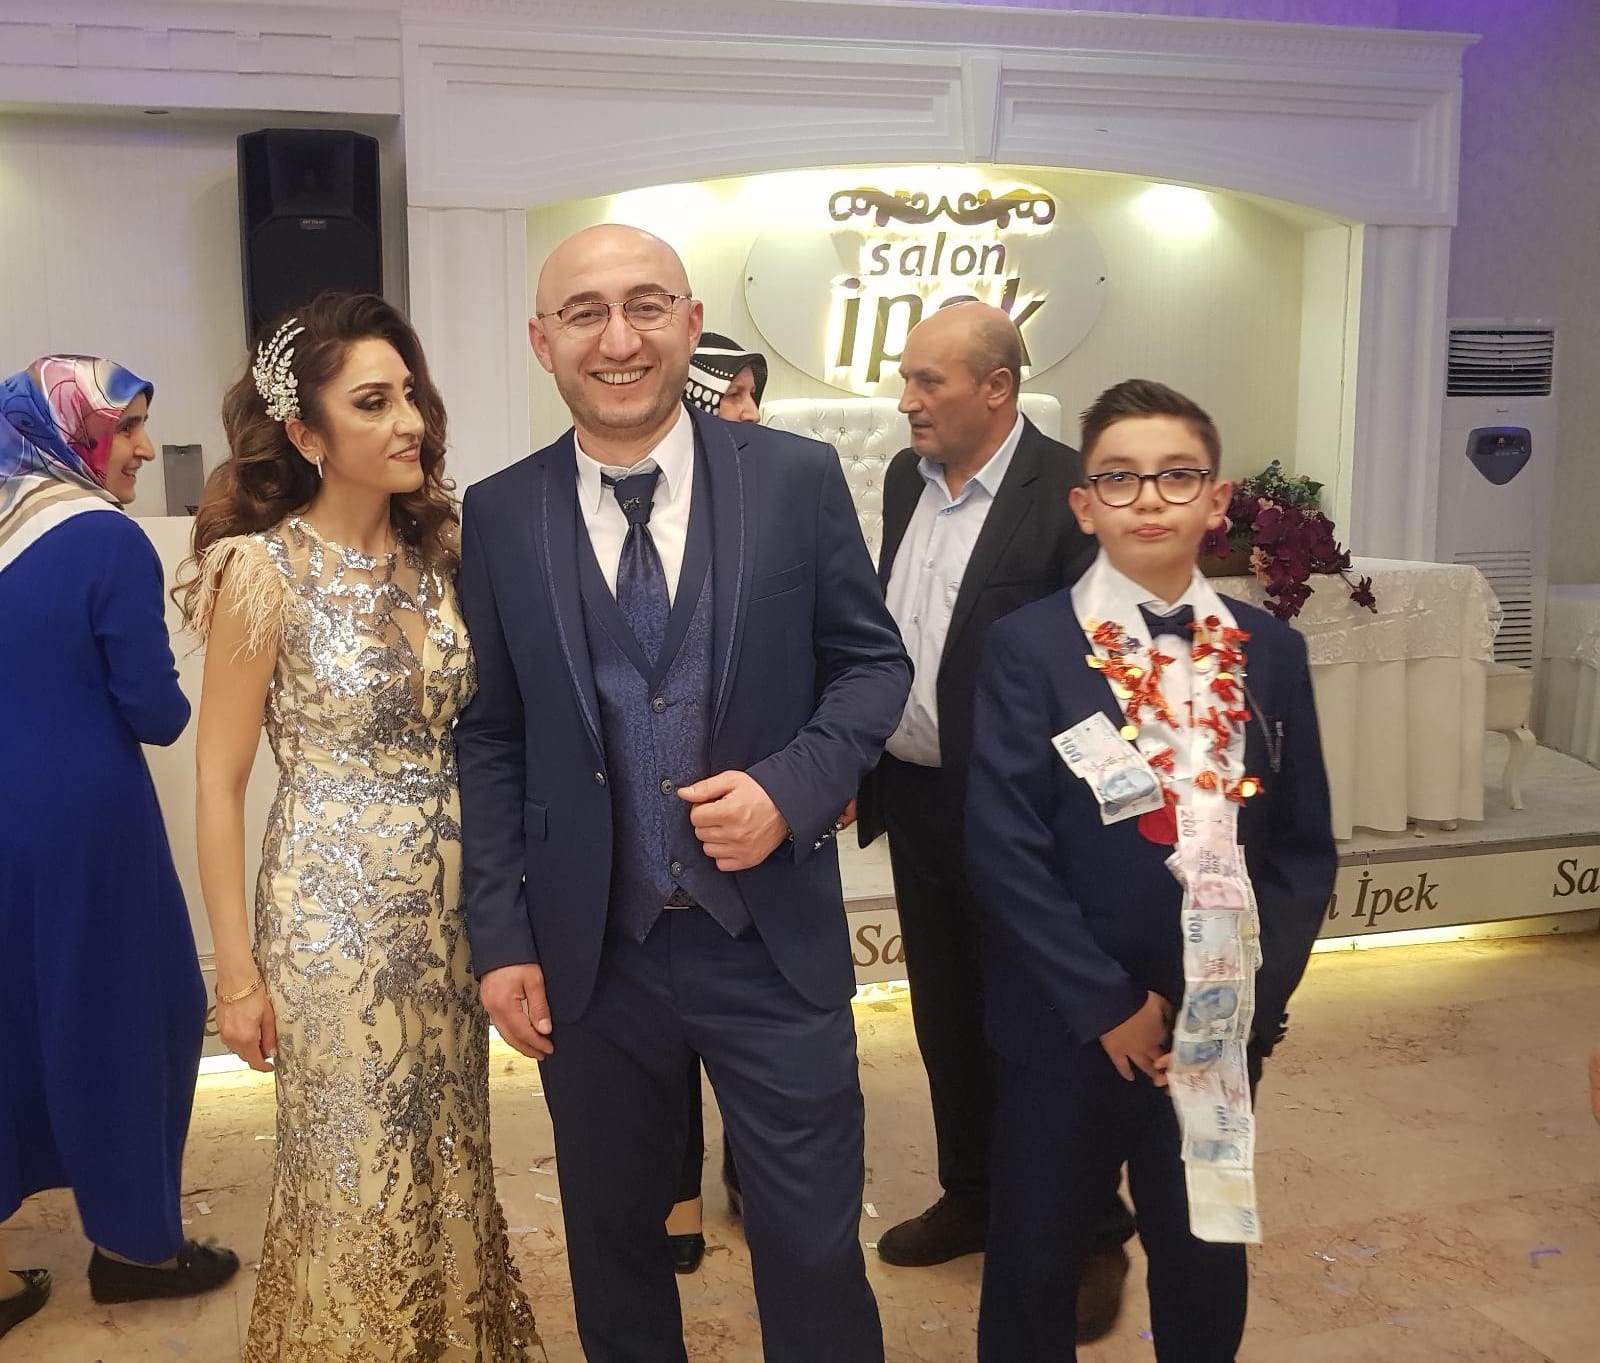 Bursa'nın önde gelen iş insanlarından Ata Kuyumculuk'un sahibi Talat Eren'in oğlu Ata Eren'in sünnet düğünü, eşi benzeri görülmemiş organizasyon eşliğinde geceye damga vurdu.